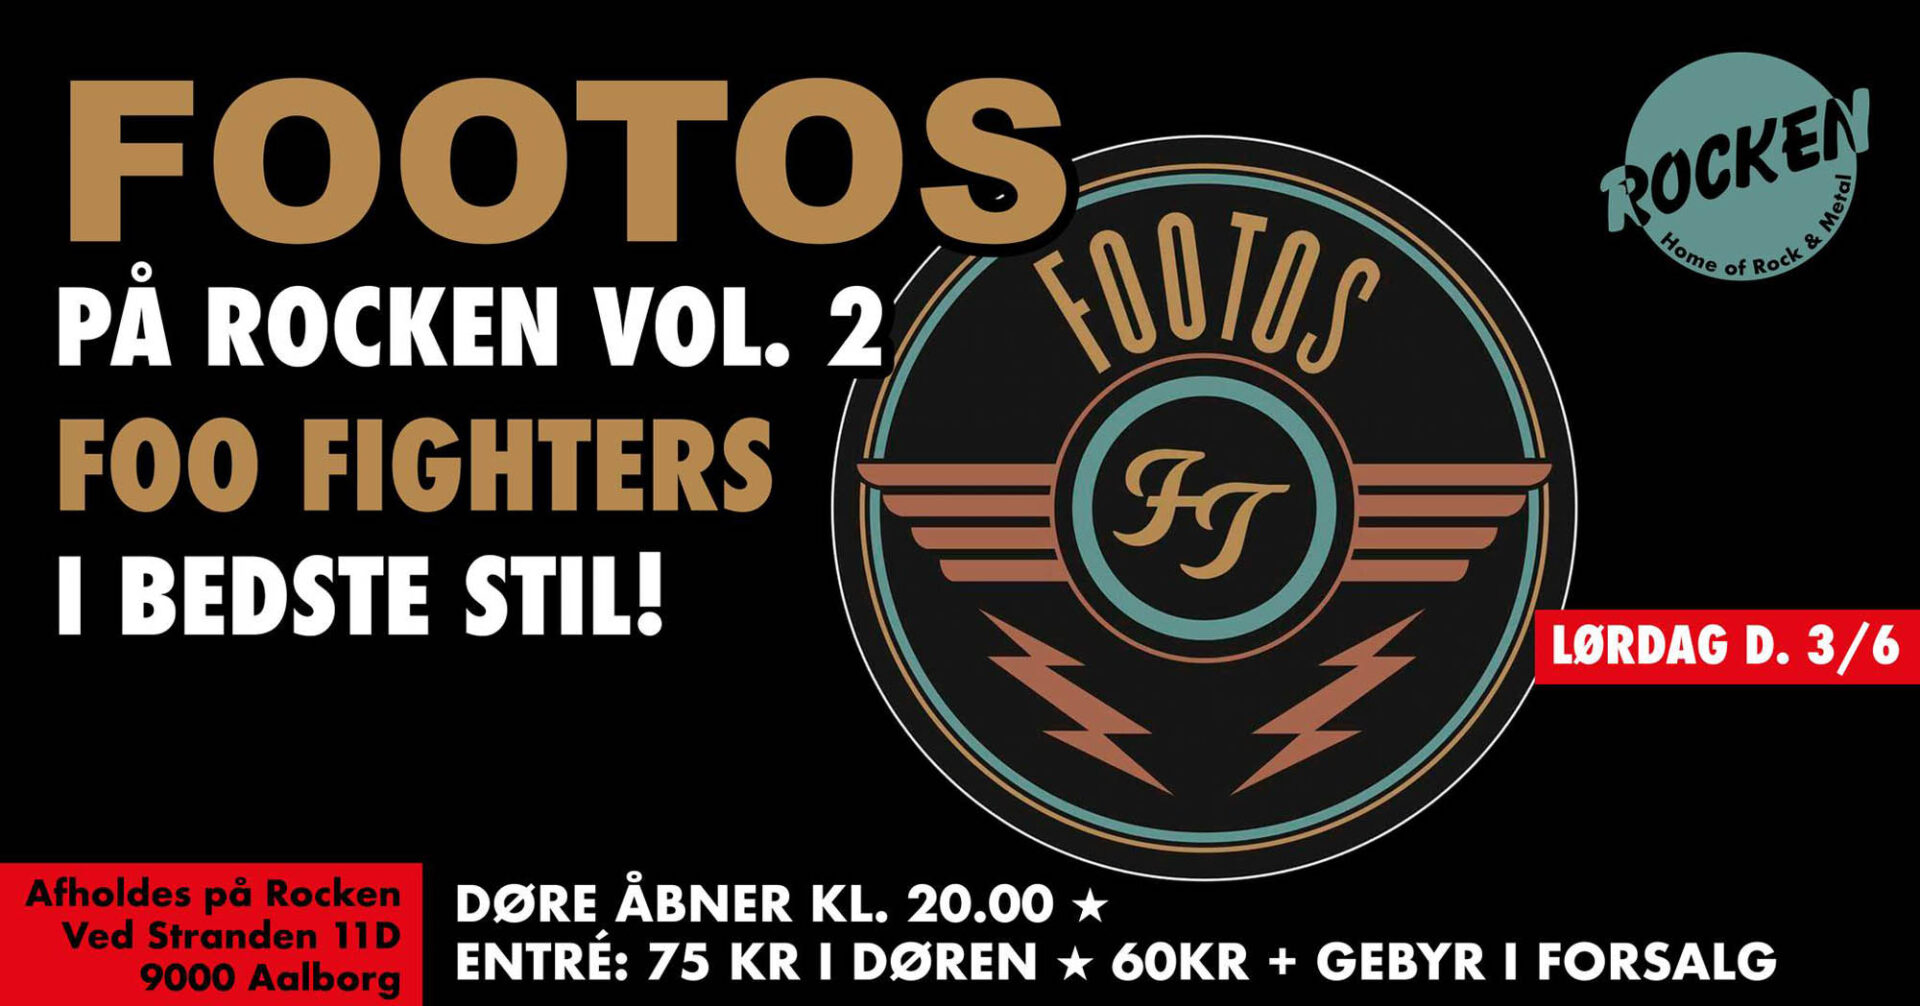 Lørdag d. 3/6 byder Rocken endnu engang på koncert med Footos 💯!
Footos leverer covers af både gamle klassikere og nyere numre fra Foo Fighters! 🔥